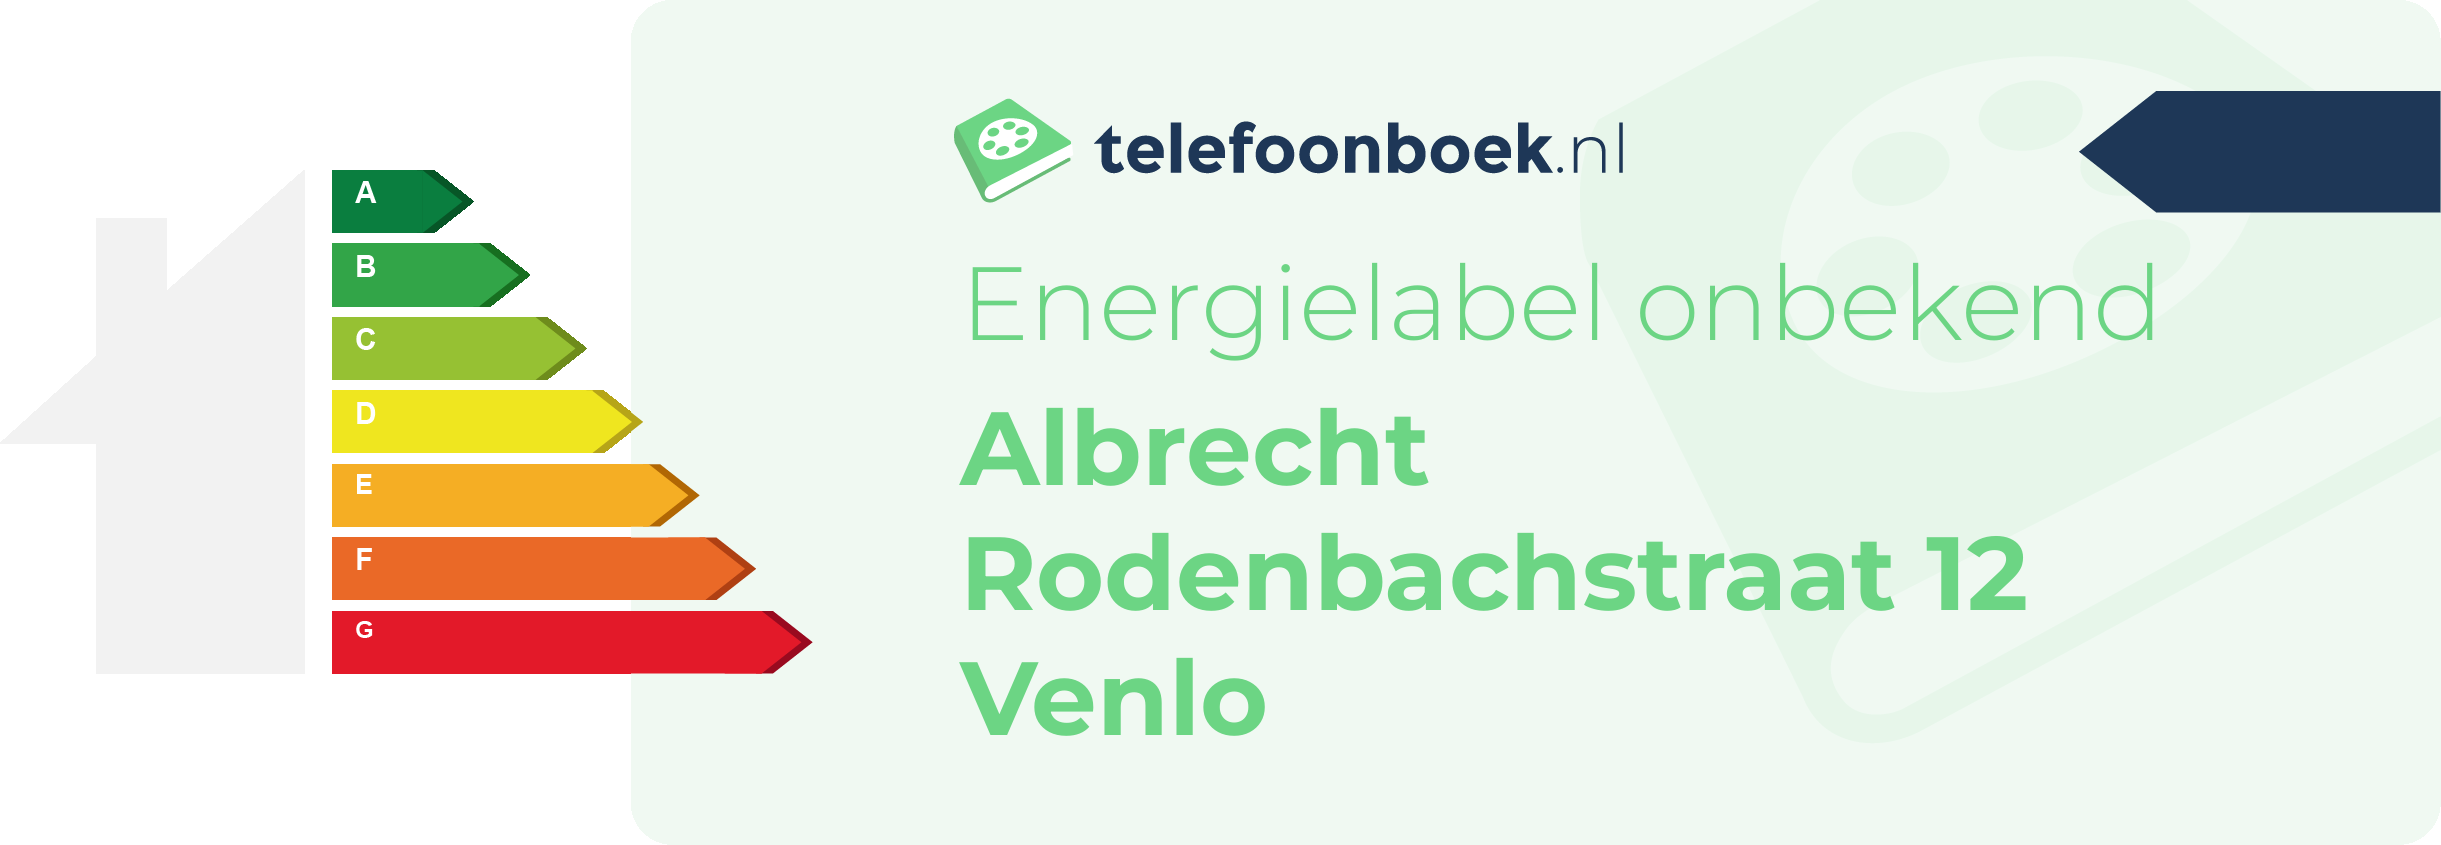 Energielabel Albrecht Rodenbachstraat 12 Venlo